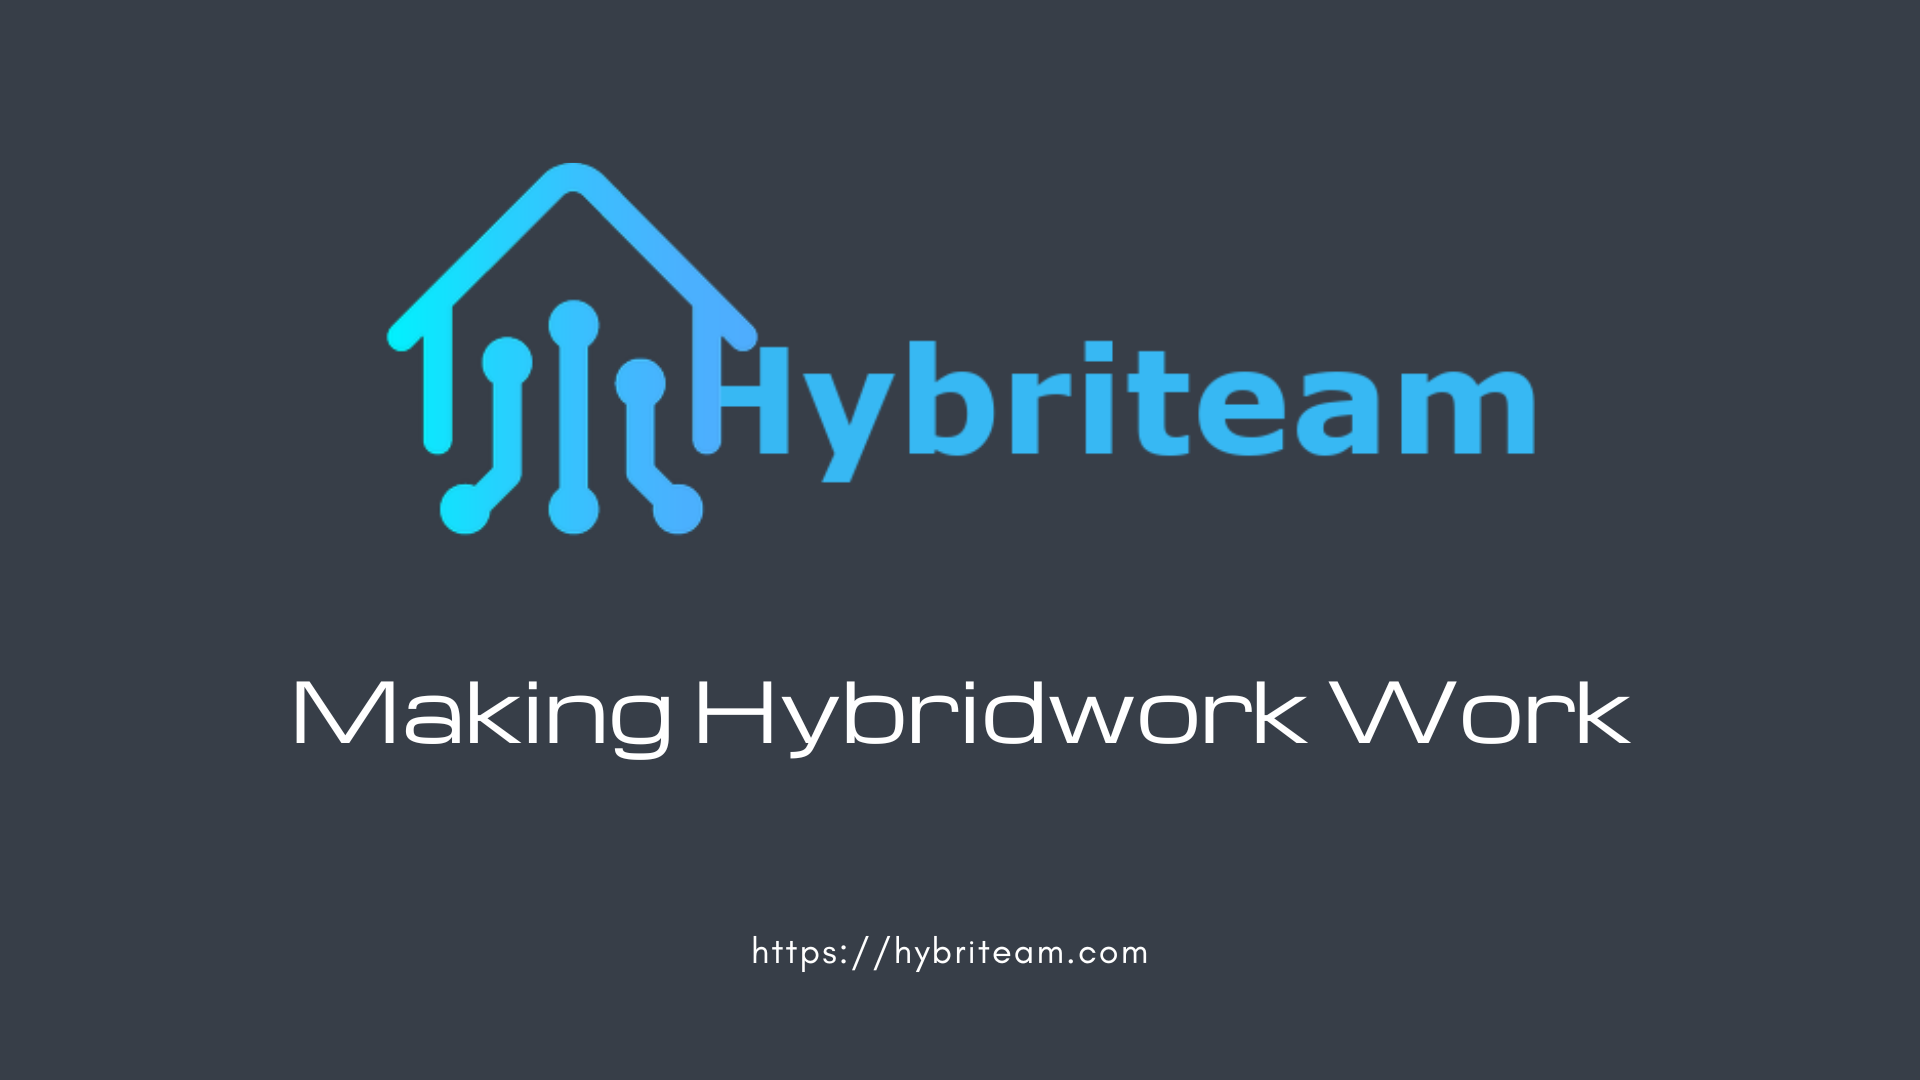 New Hybriteam version sends platform into new era